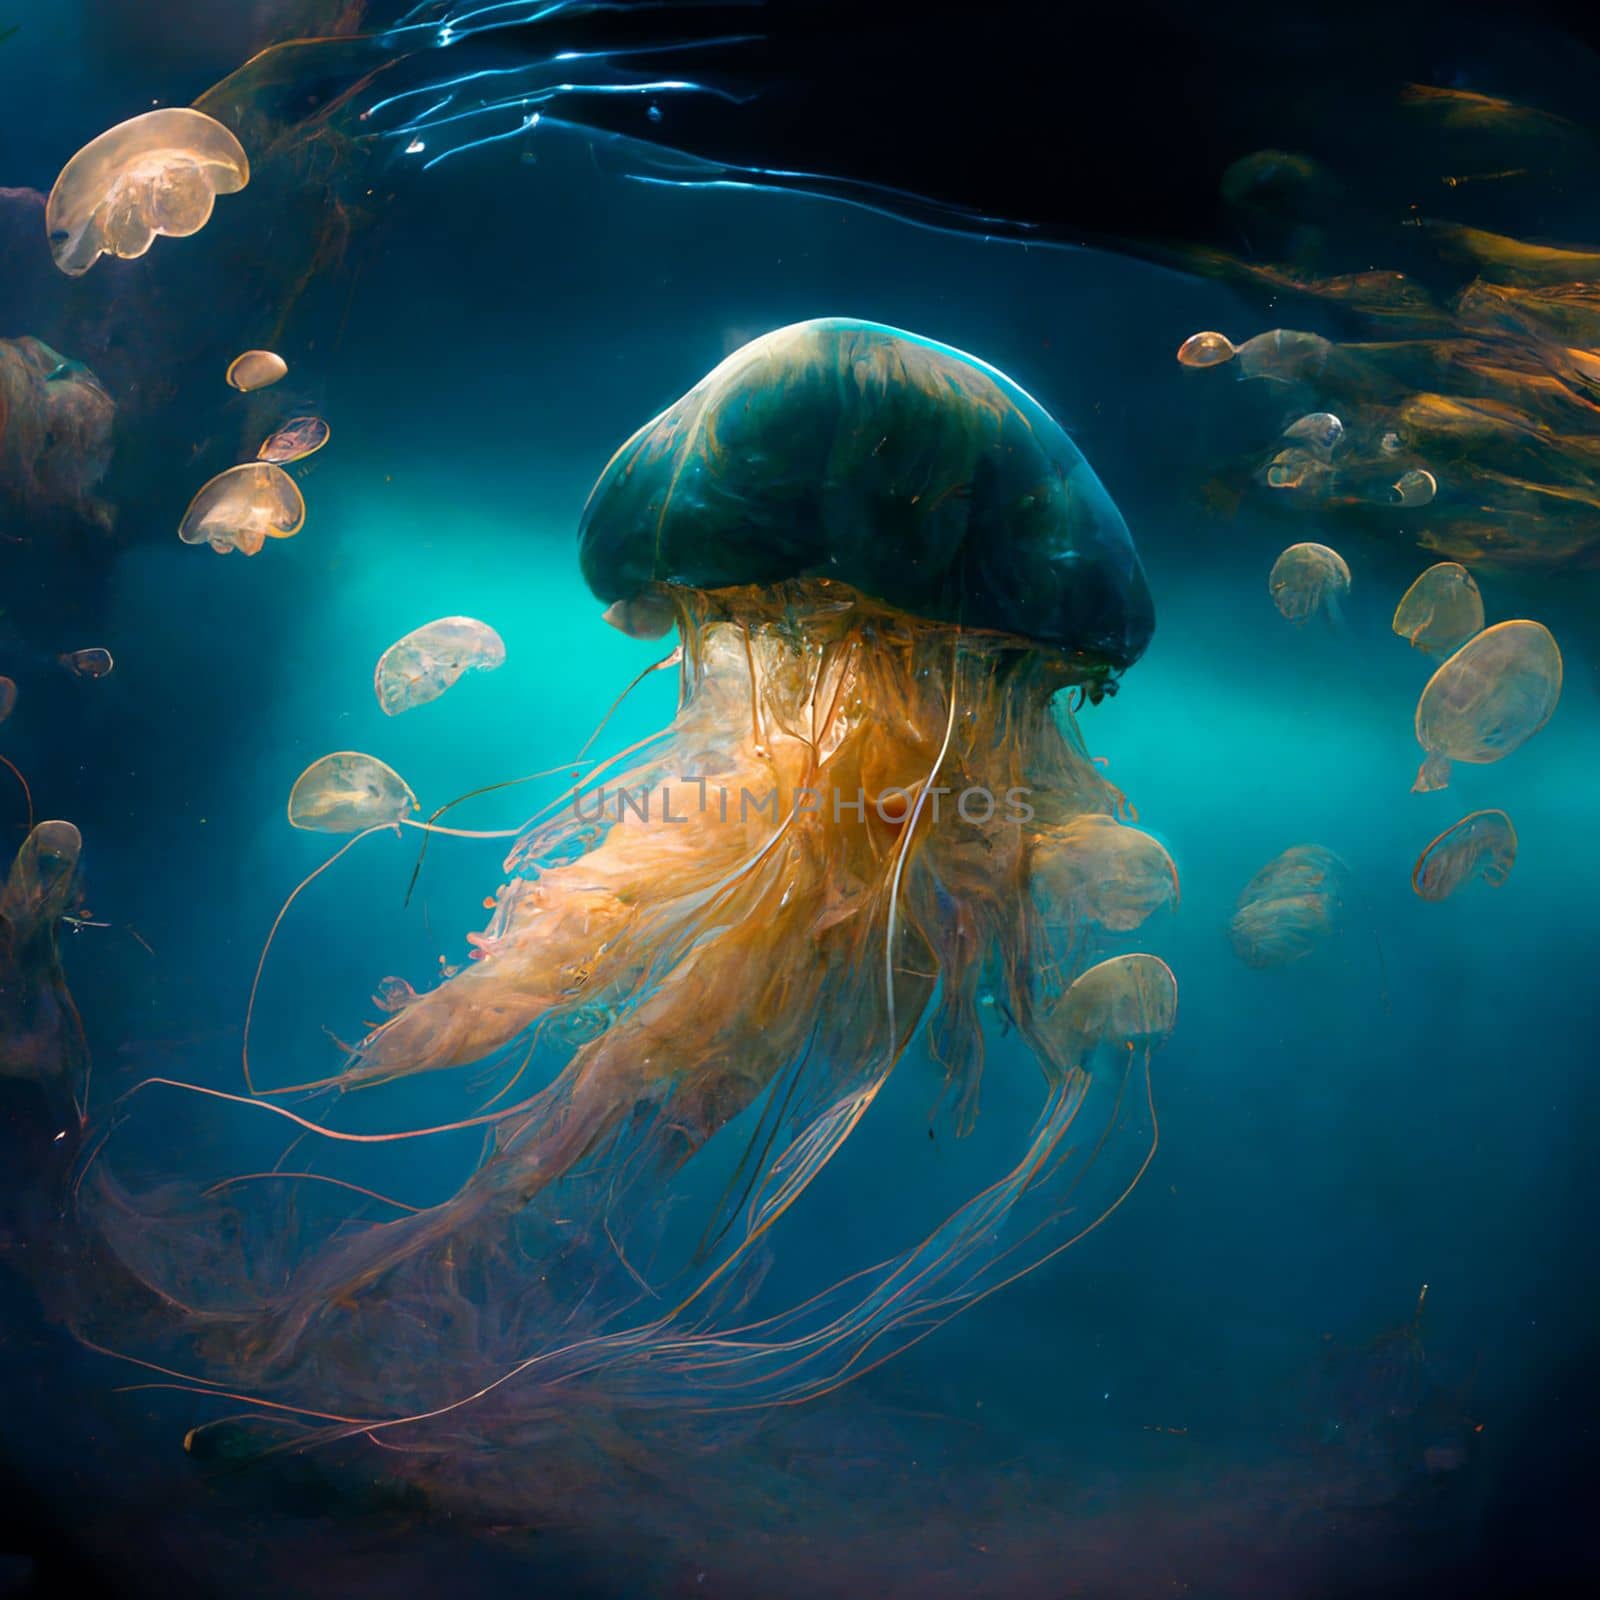 Beautiful jellyfish in the underwater world with inner glow by studiodav